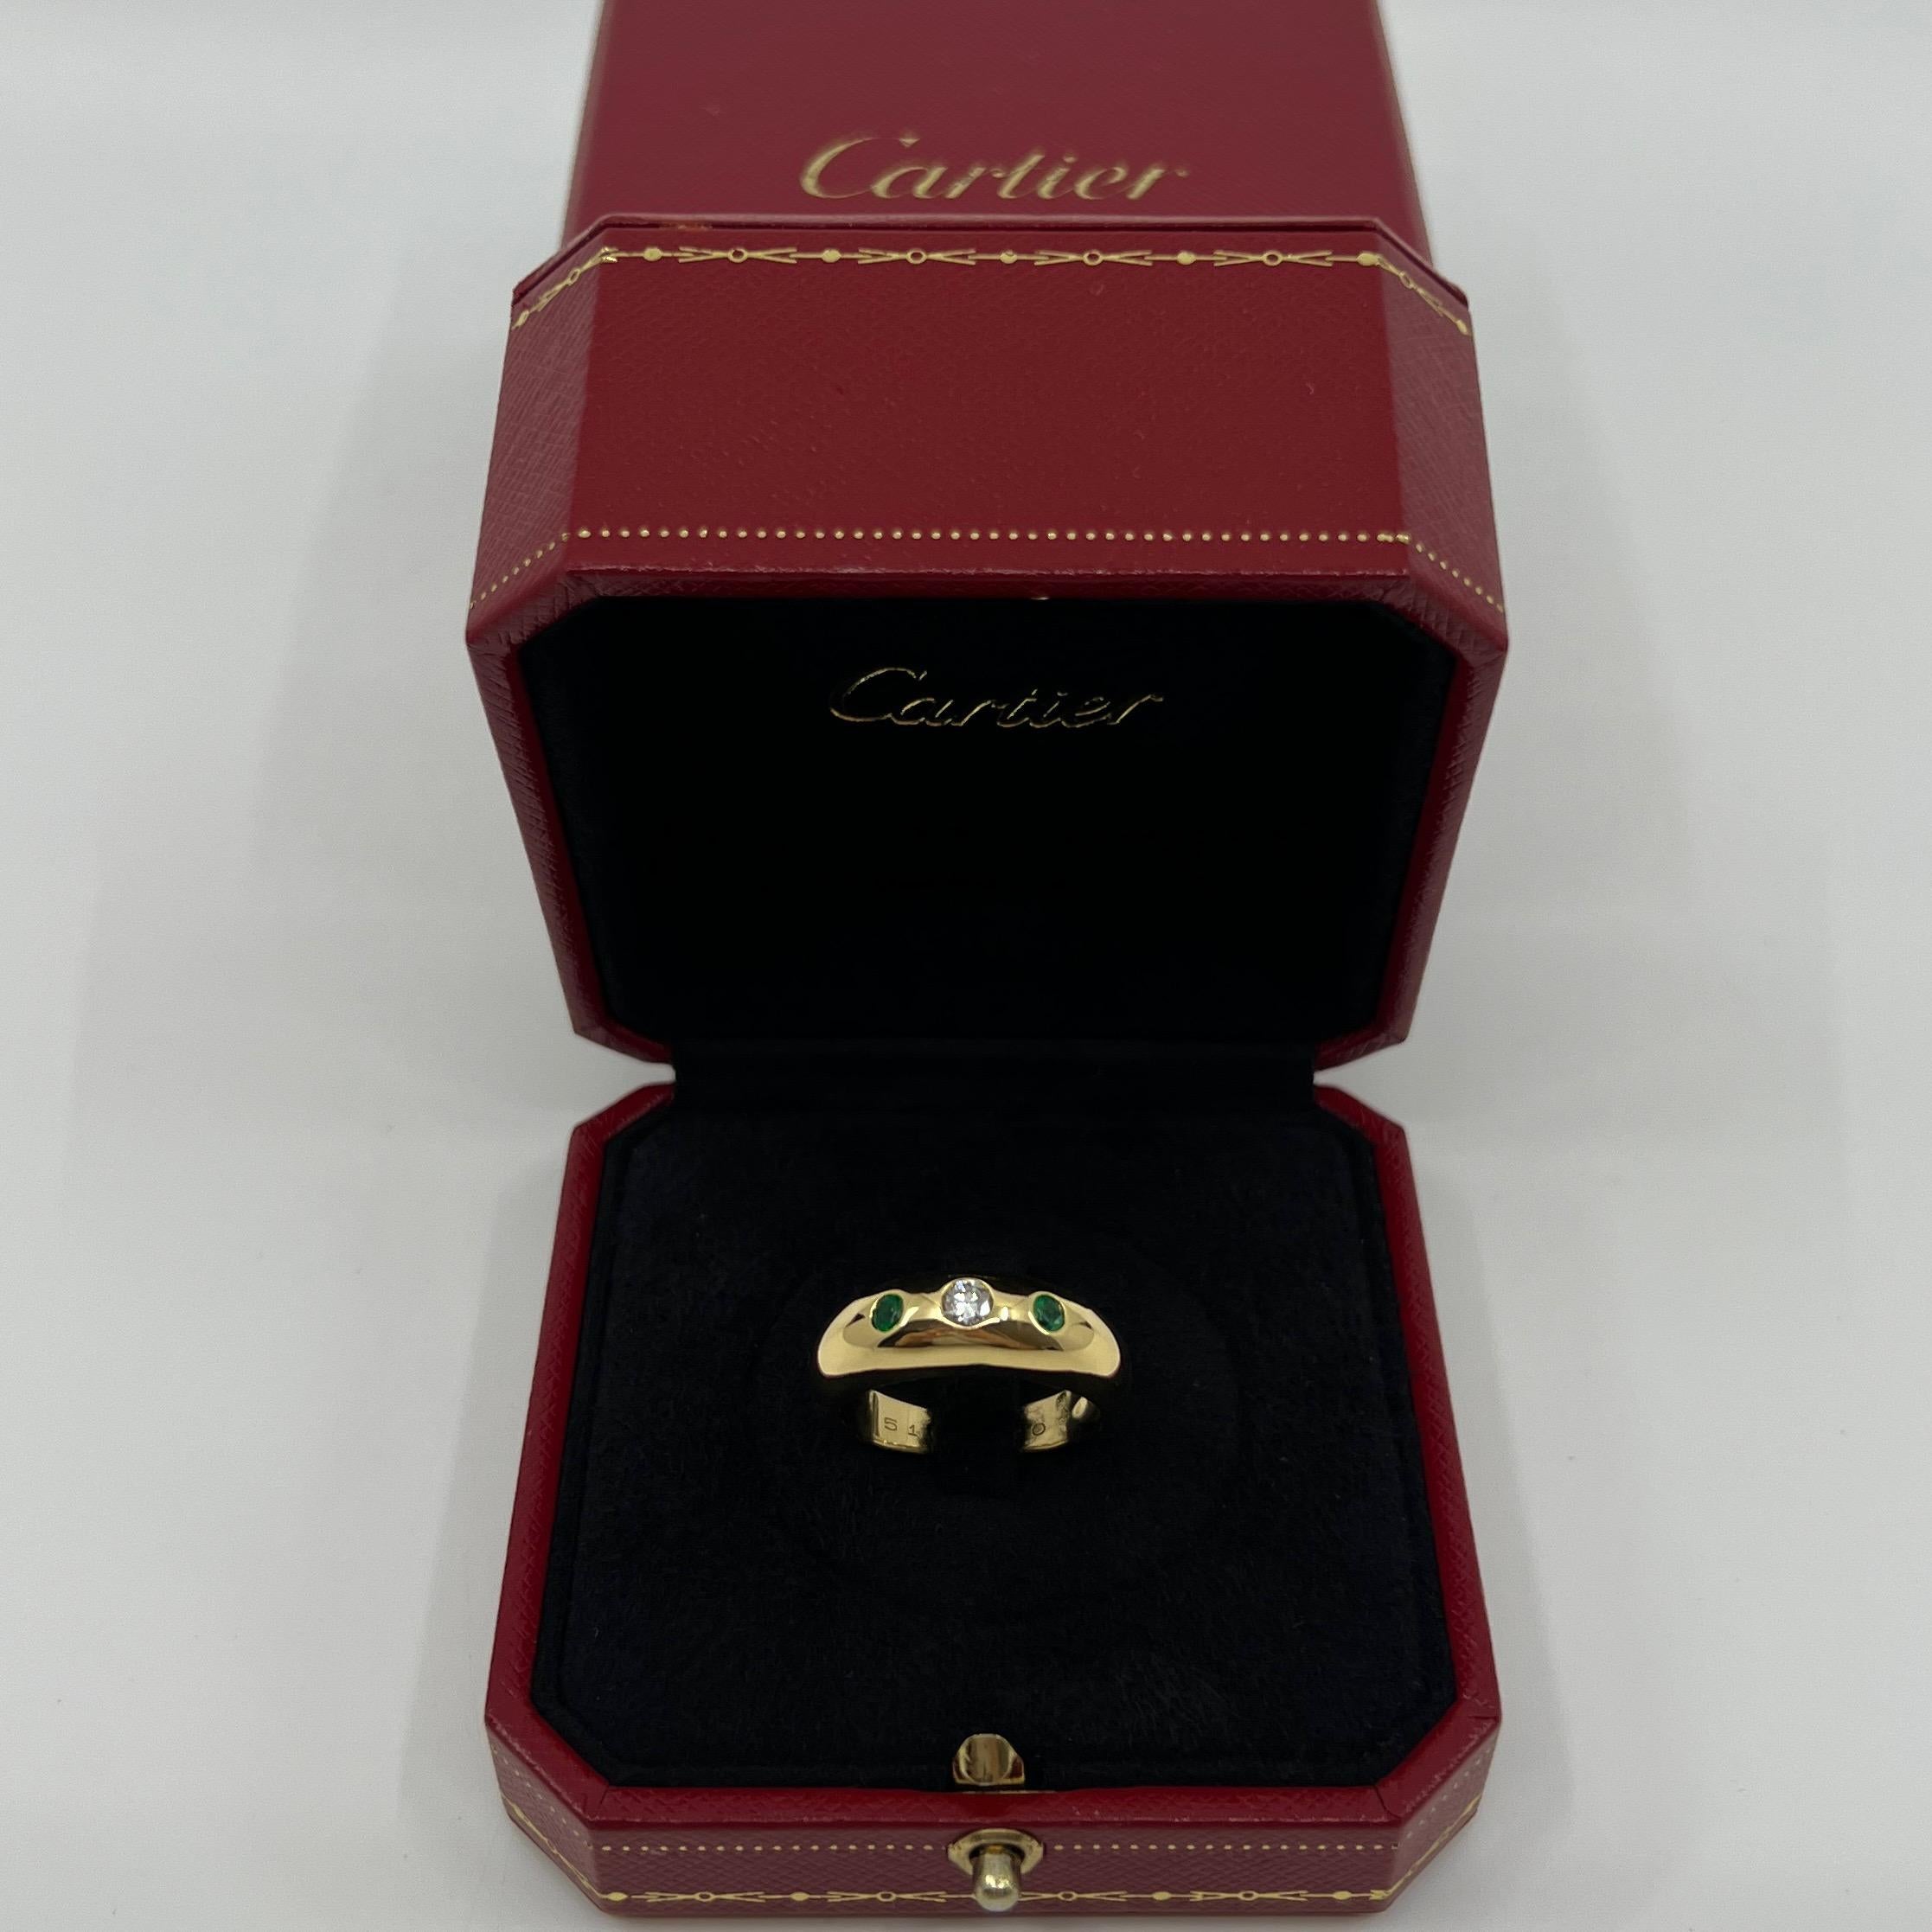 Large Size Vintage Cartier Diamond And Emerald 18k Yellow Gold Three Stone Dome Signet Ring.

Superbe bague Cartier en or jaune sertie d'un magnifique diamant central de 3,5 mm de couleur F/G et de pureté VVS. Elle est rehaussée de deux fines